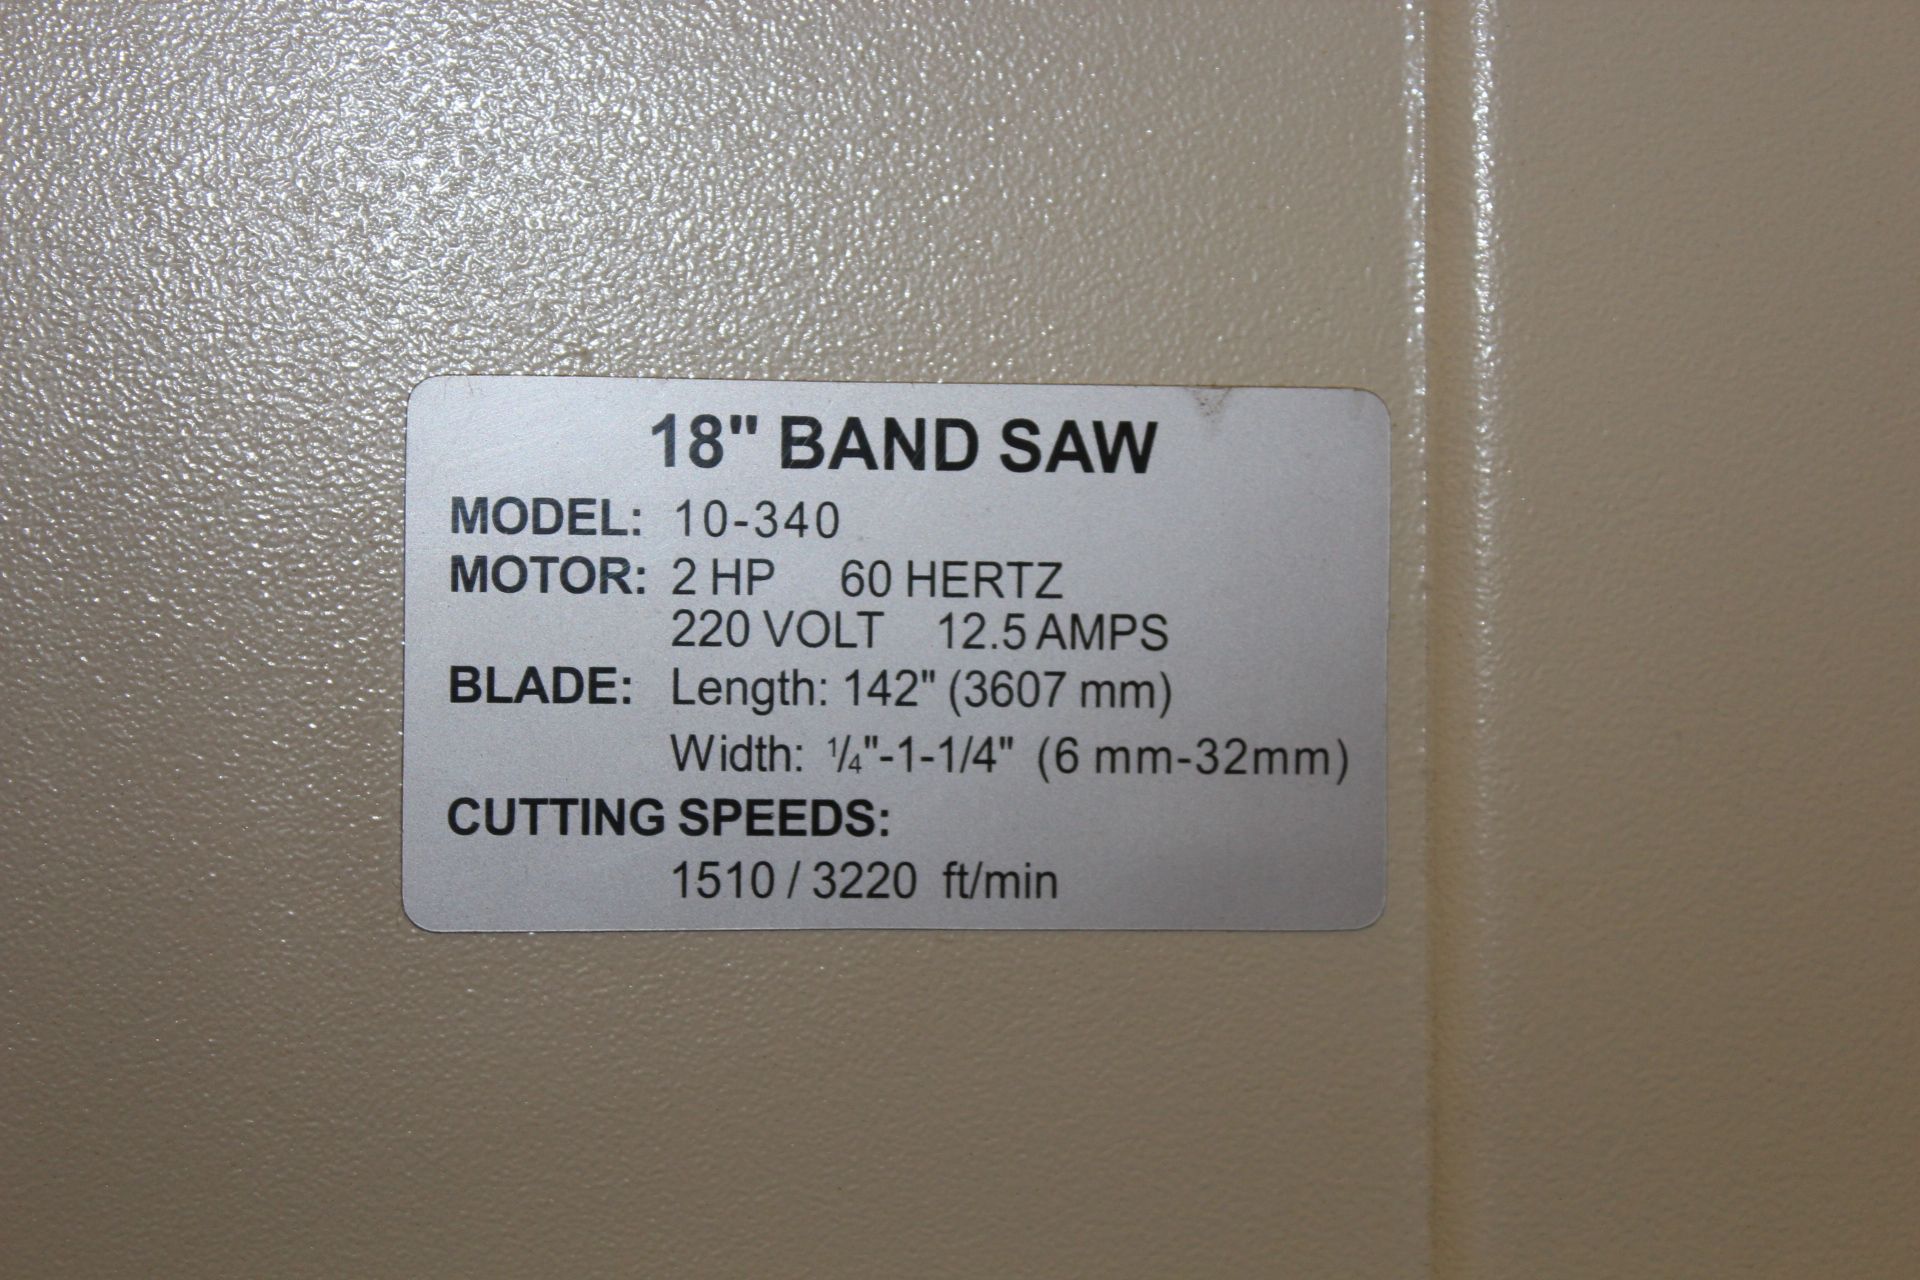 Rikon 18" Band Saw Model 10-340 - Image 2 of 4